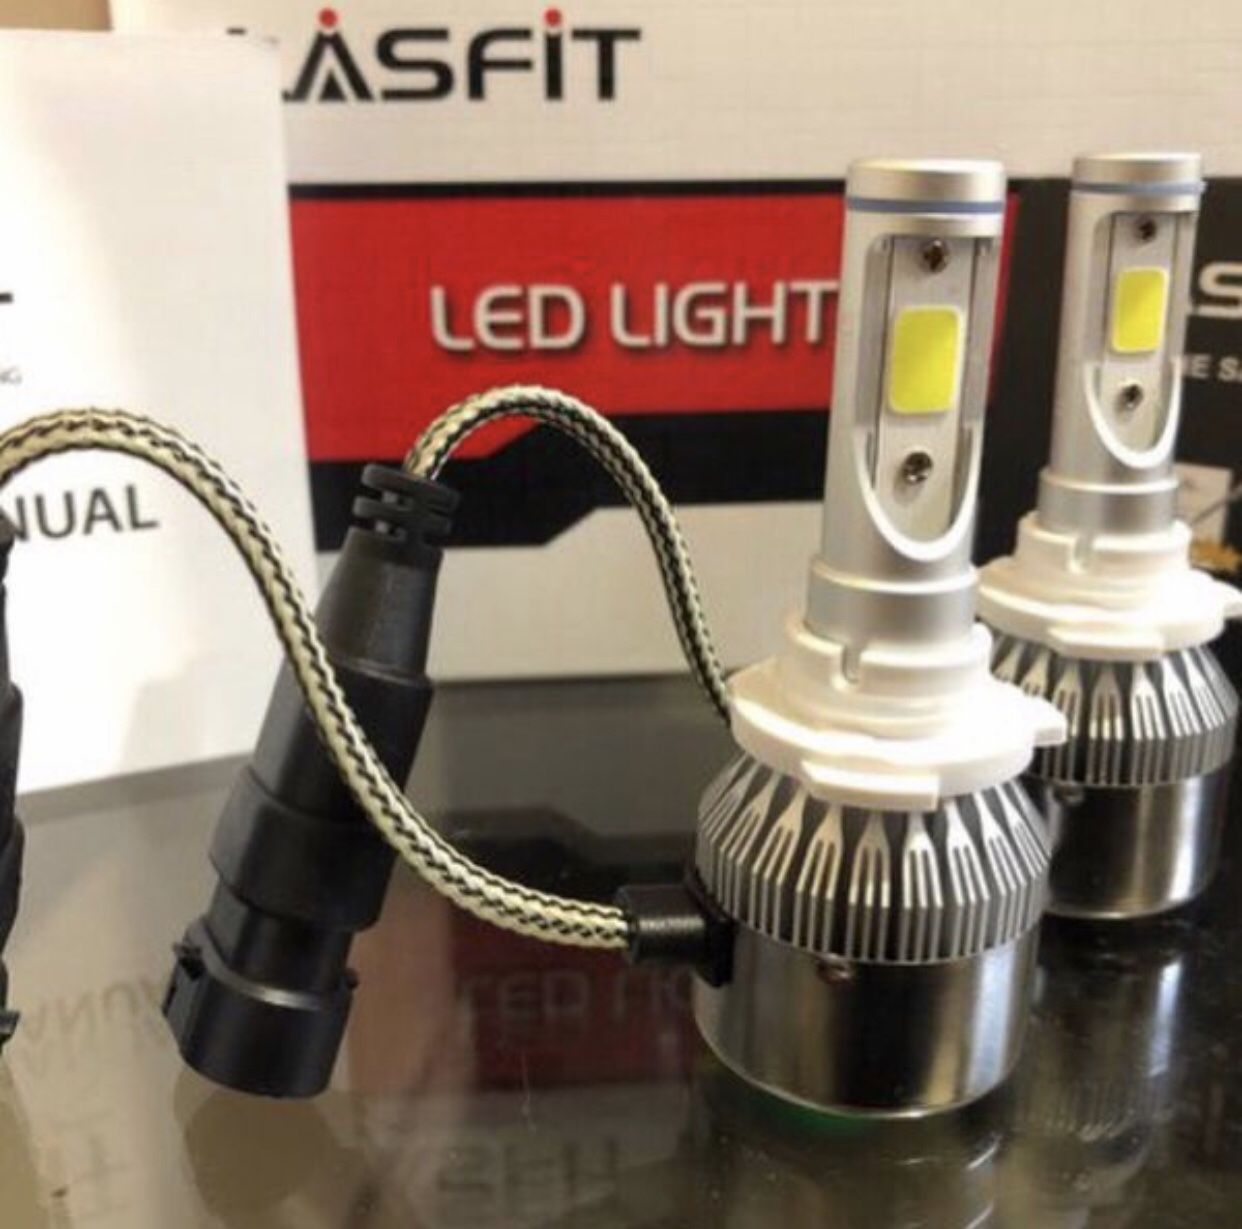 LASFIT LED